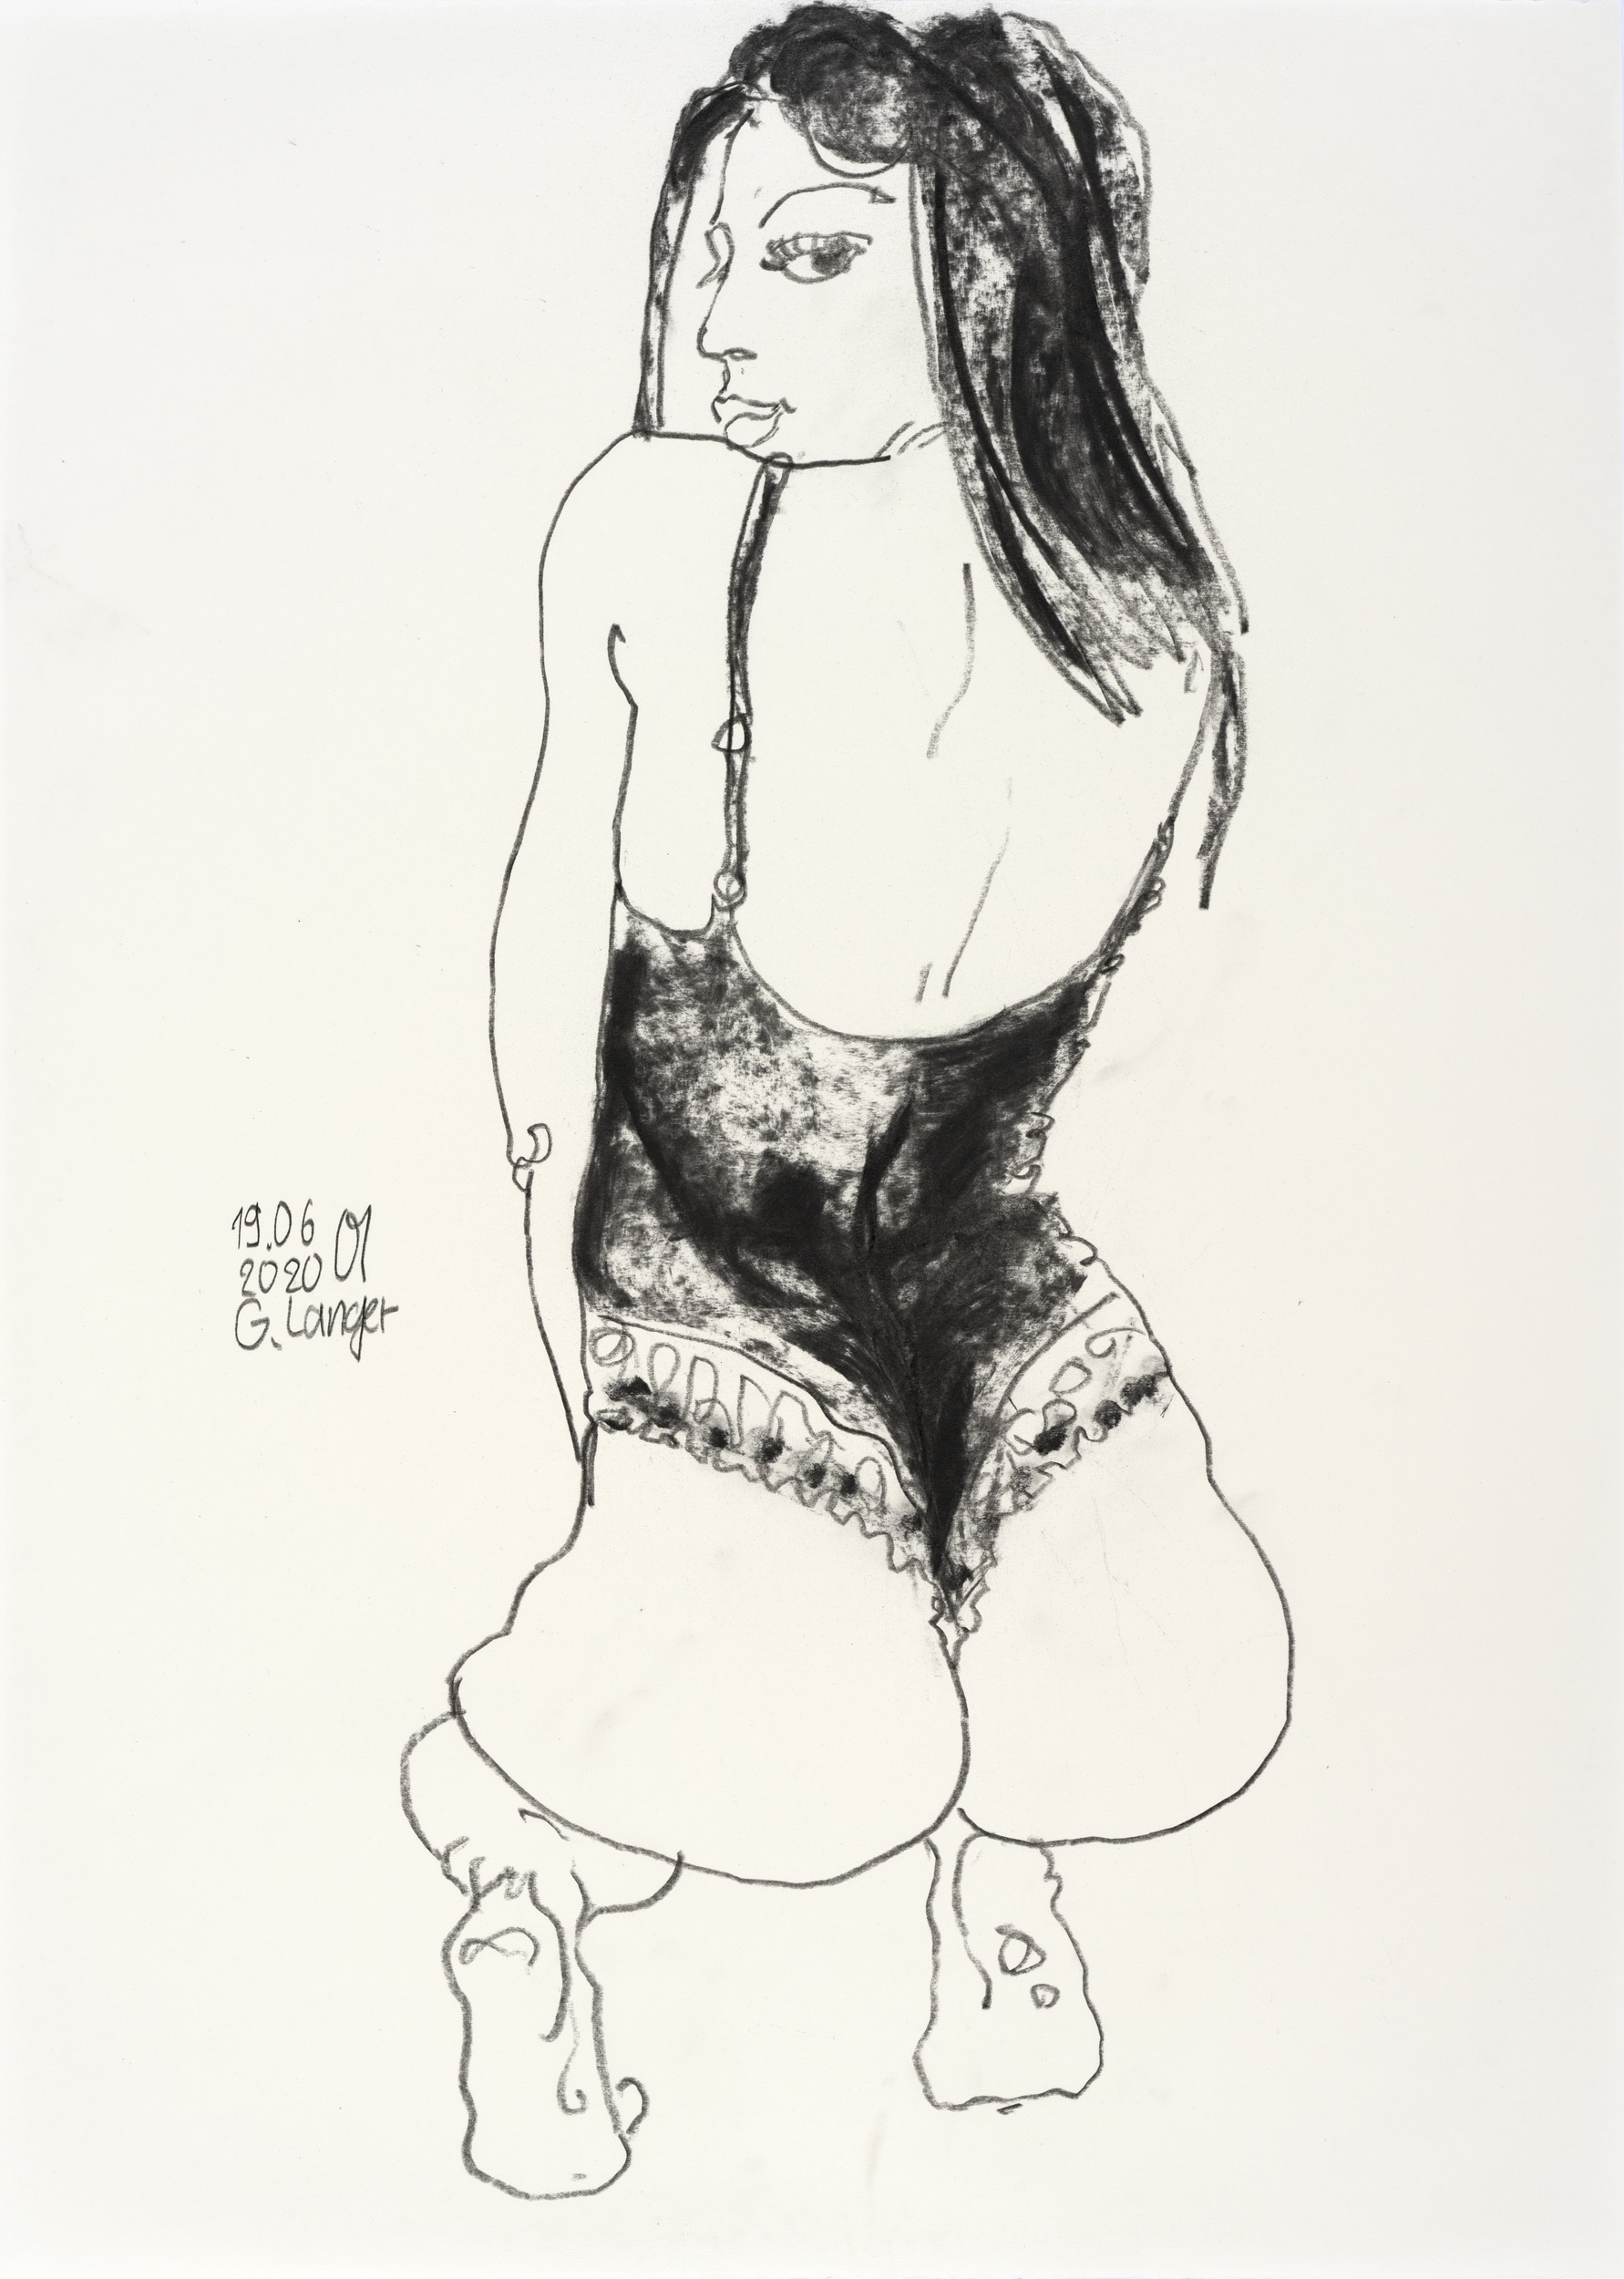 Gunter Langer, Kauerndes Mädchen, Unwiderstehlicher Blick, 2020, Zeichnung Kohle (Kohlezeichnung), Zeichenpapier, 71 x 51 cm